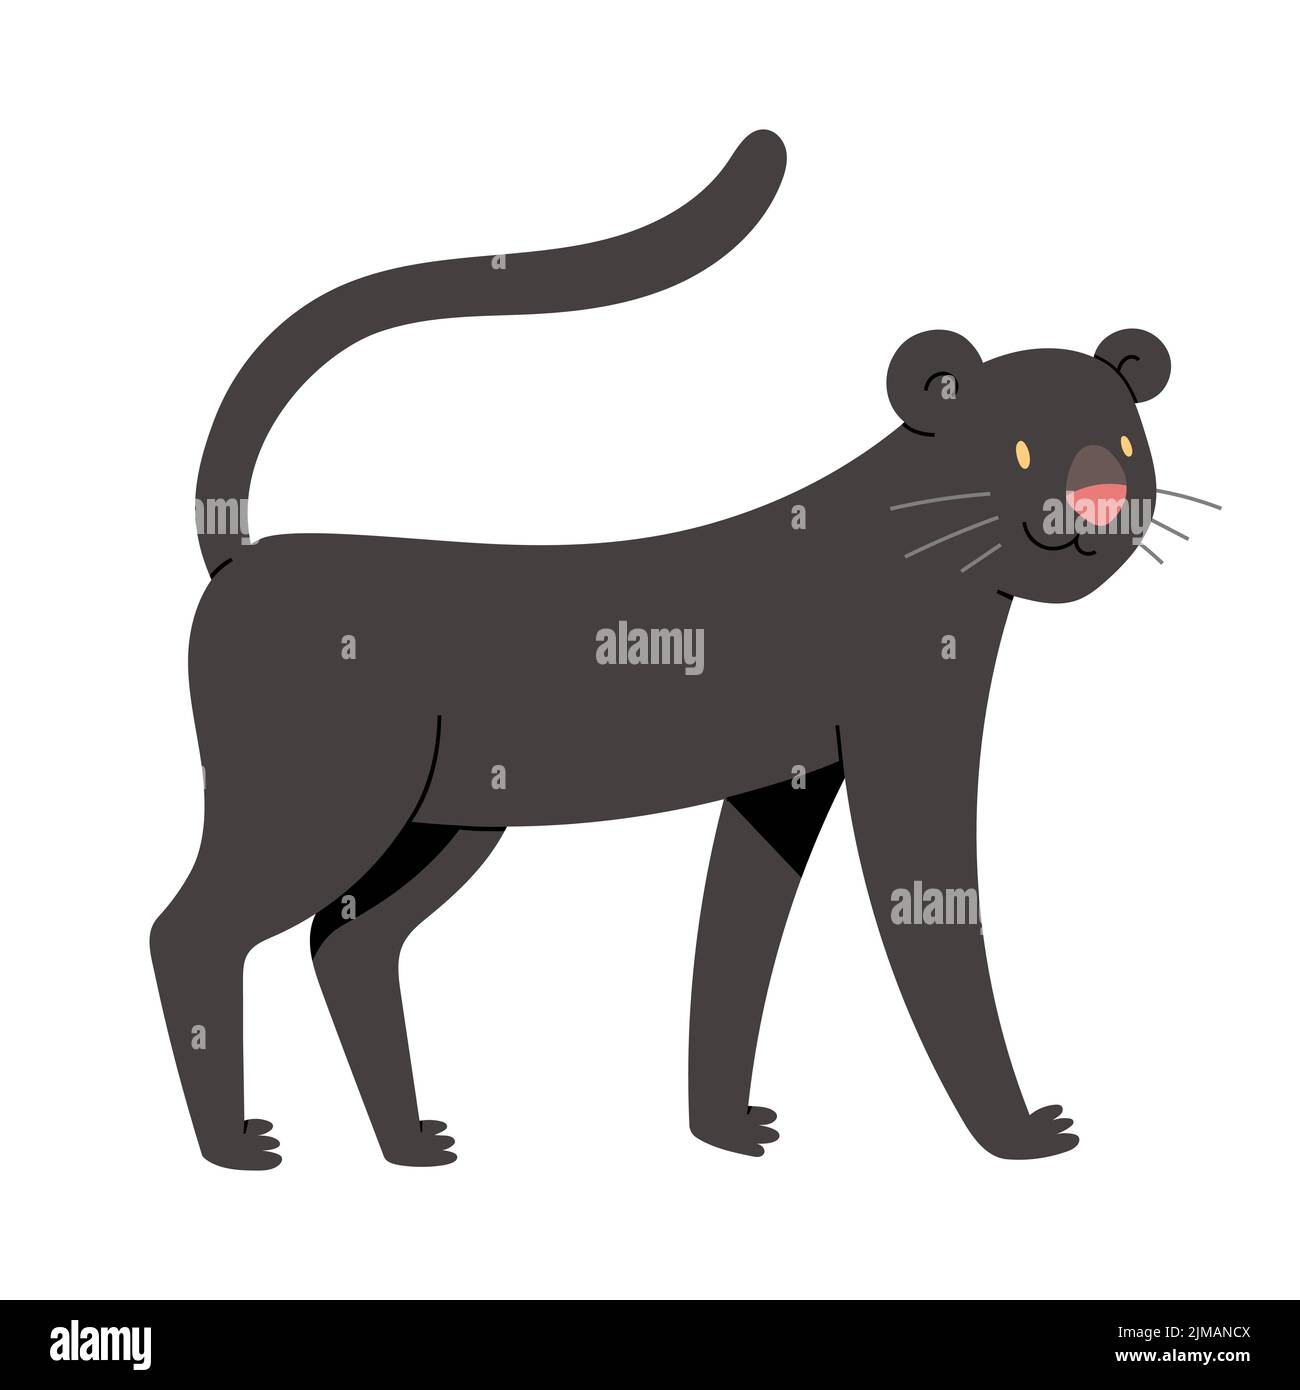 Joli personnage panthère, illustration de gros chat, jaguar noire avec expression de visage souriant, féline de jungle, illustration vectorielle isolée sur blanc Illustration de Vecteur